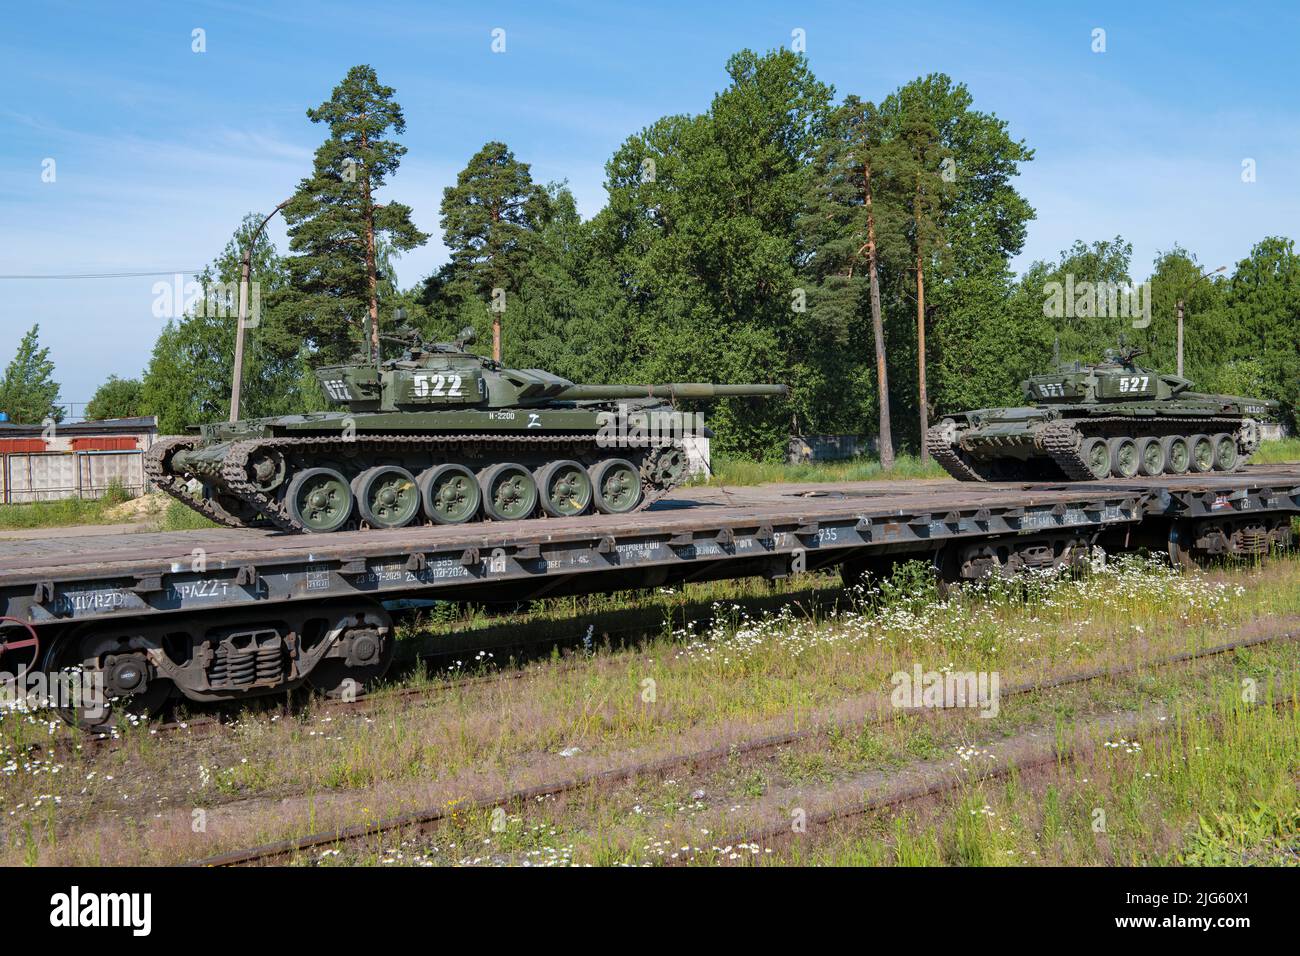 SERTOLOVO, RUSSIE - 02 JUILLET 2022 : chars russes sur des plates-formes ferroviaires le jour ensoleillé de juillet. Région de Leningrad Banque D'Images